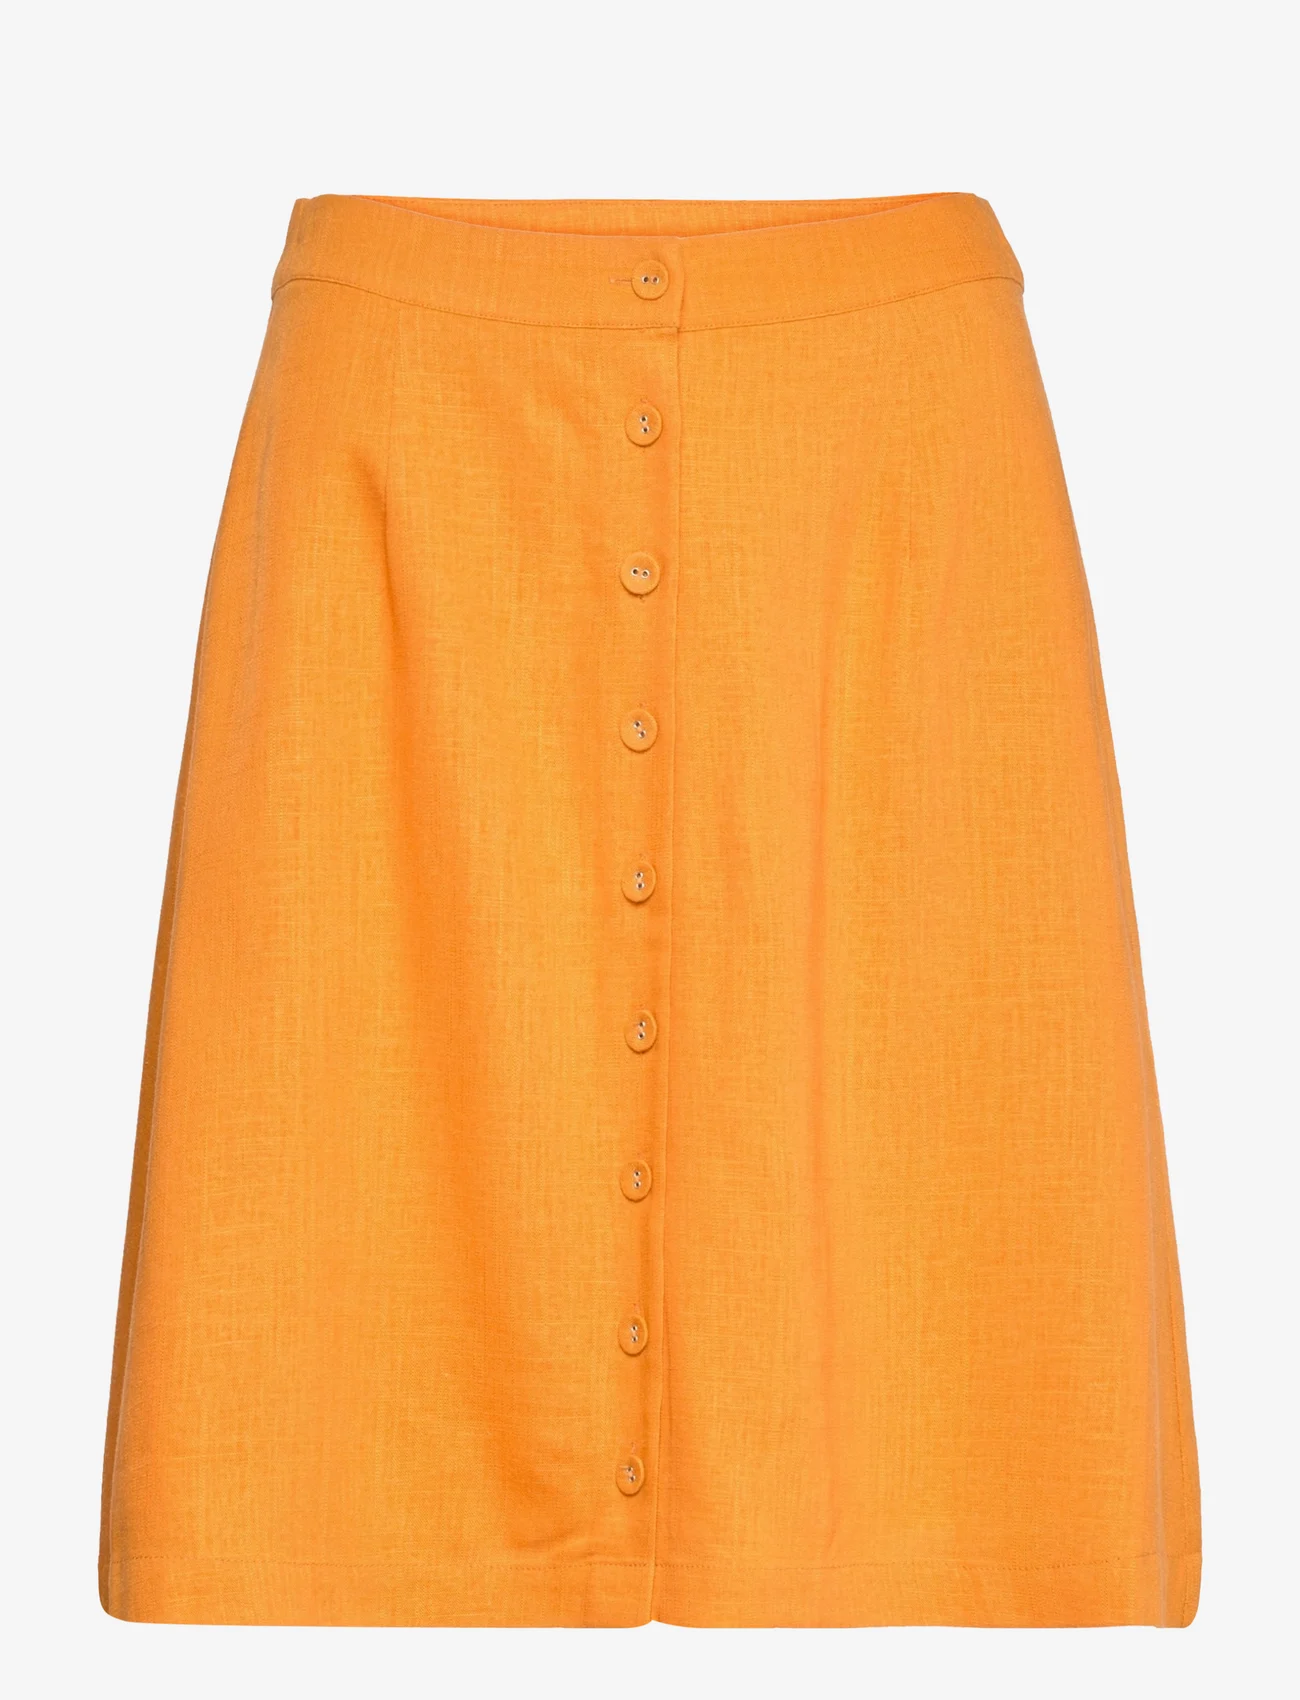 Selected Femme - SLFGULIA HW SHORT SKIRT B - short skirts - iceland poppy - 0